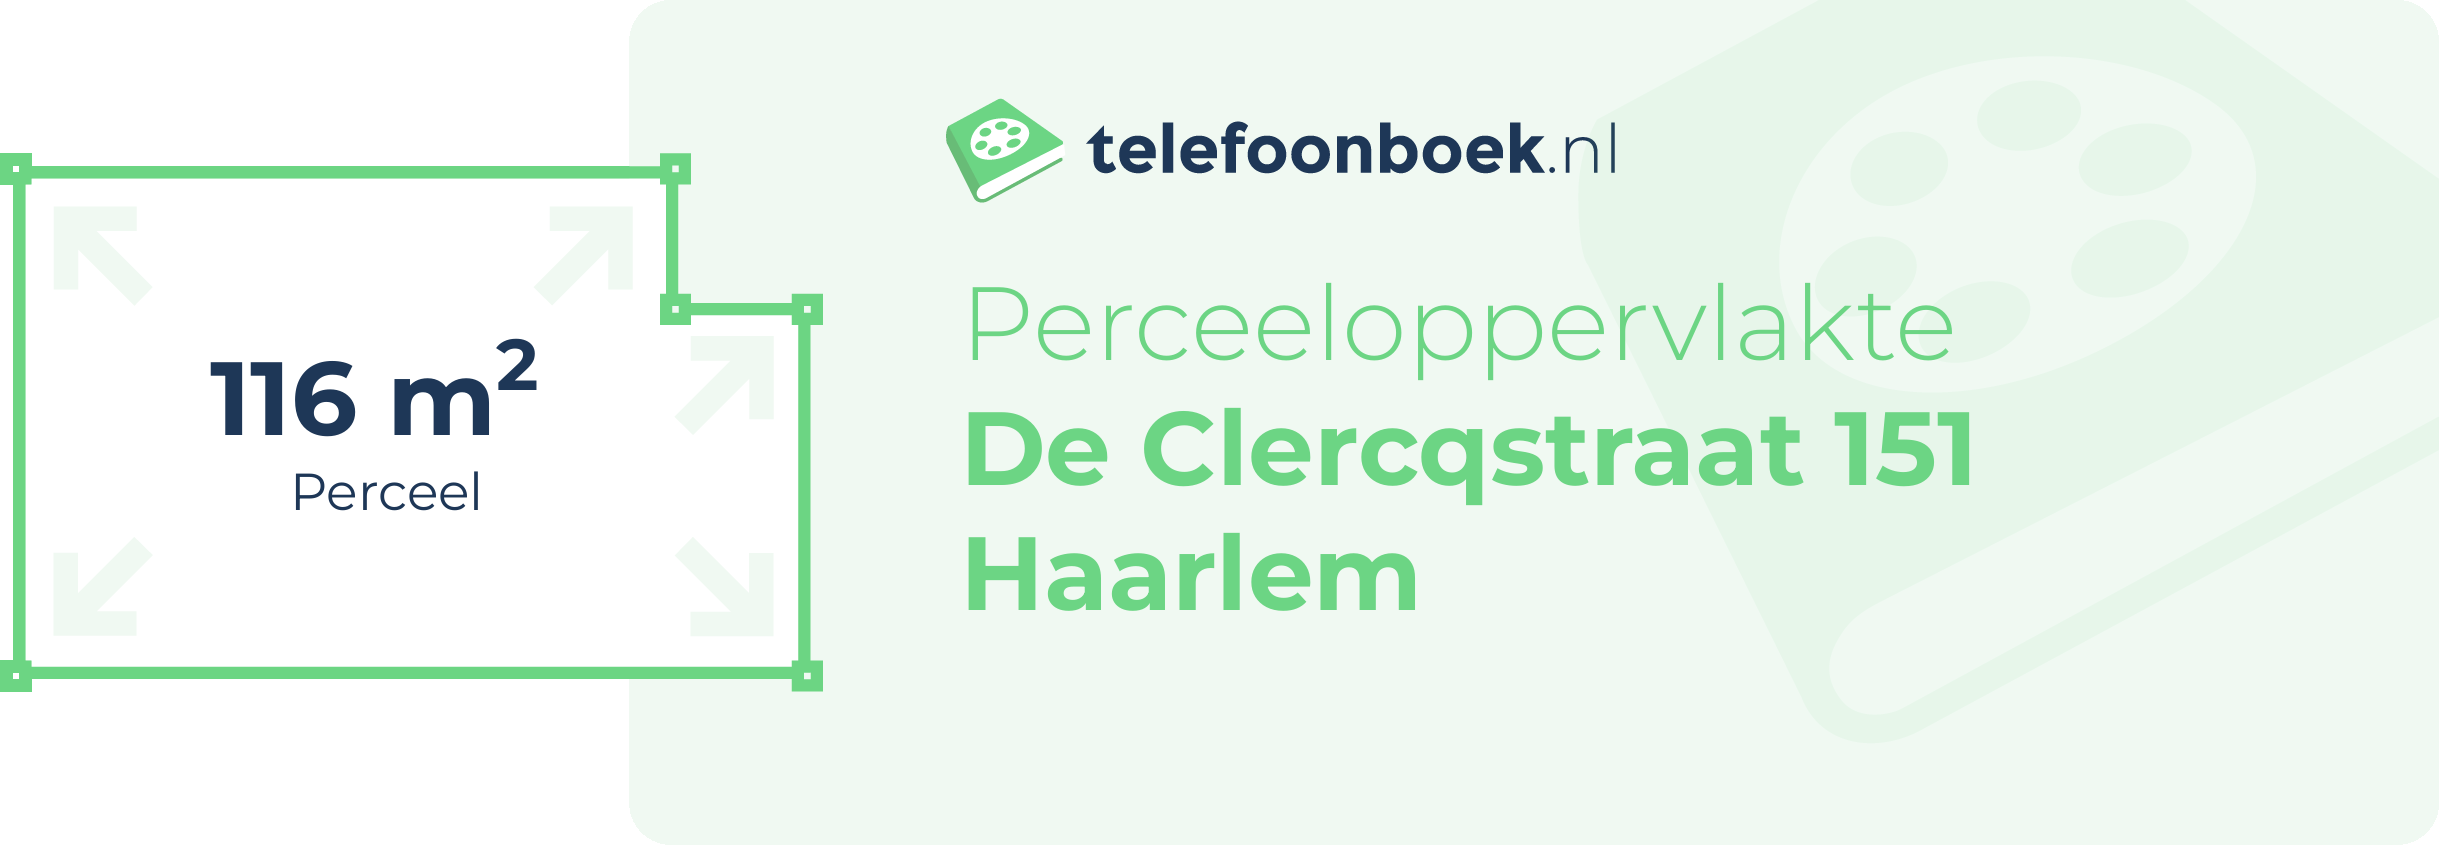 Perceeloppervlakte De Clercqstraat 151 Haarlem